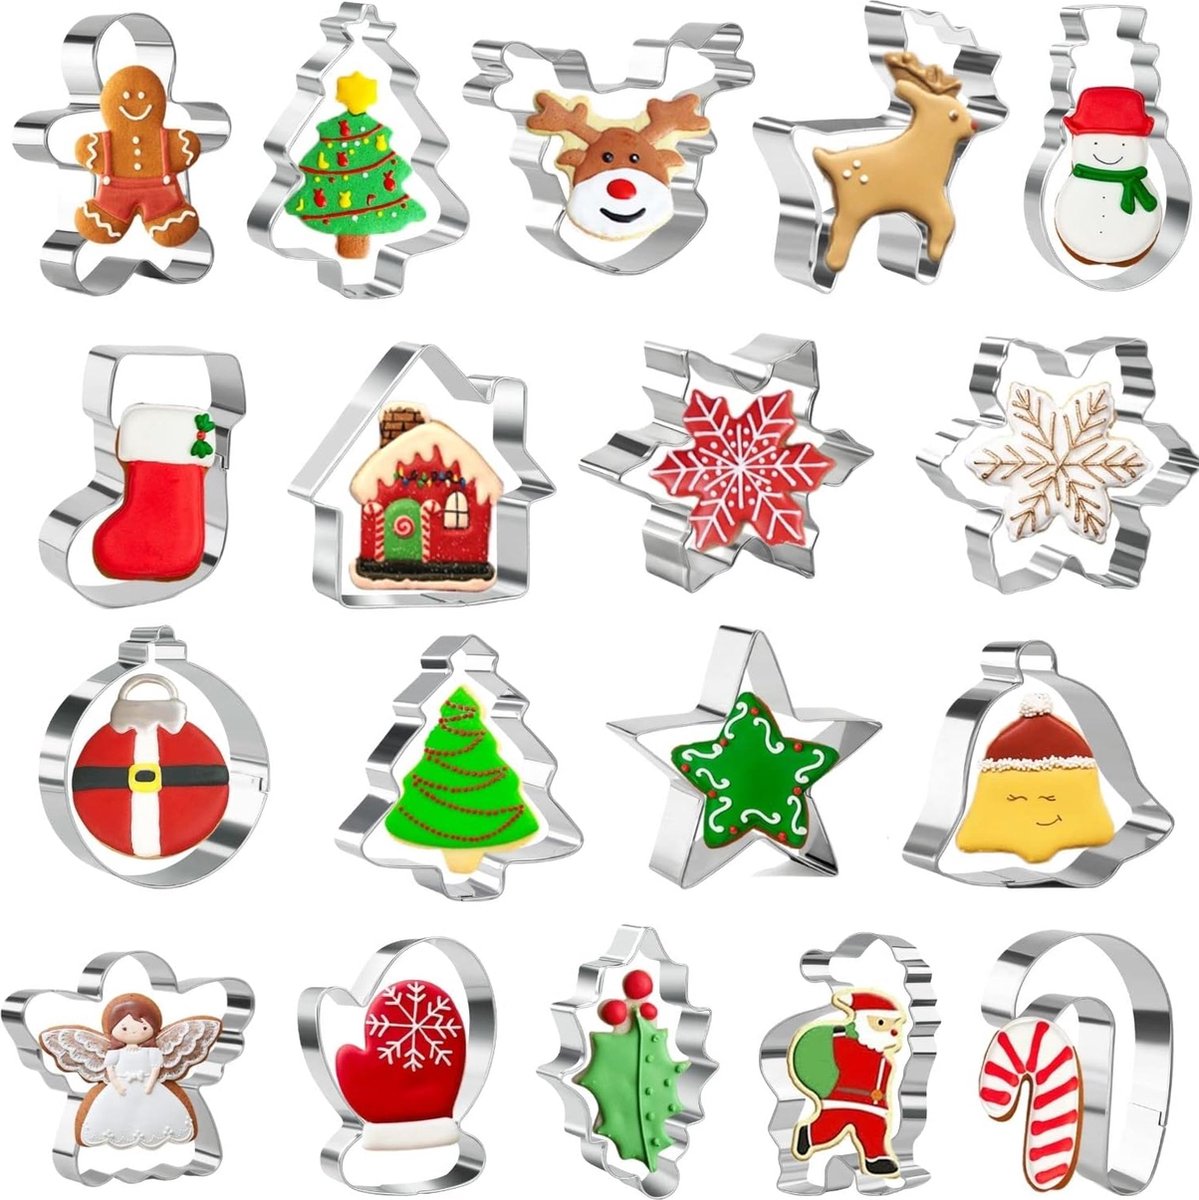 Keapaty 18 stuks kerstuitsteekvormen om te bakken – kerstboom, peperkoekman, sneeuwvlok, kerstman en andere kerstvormen Merk: Keepaty